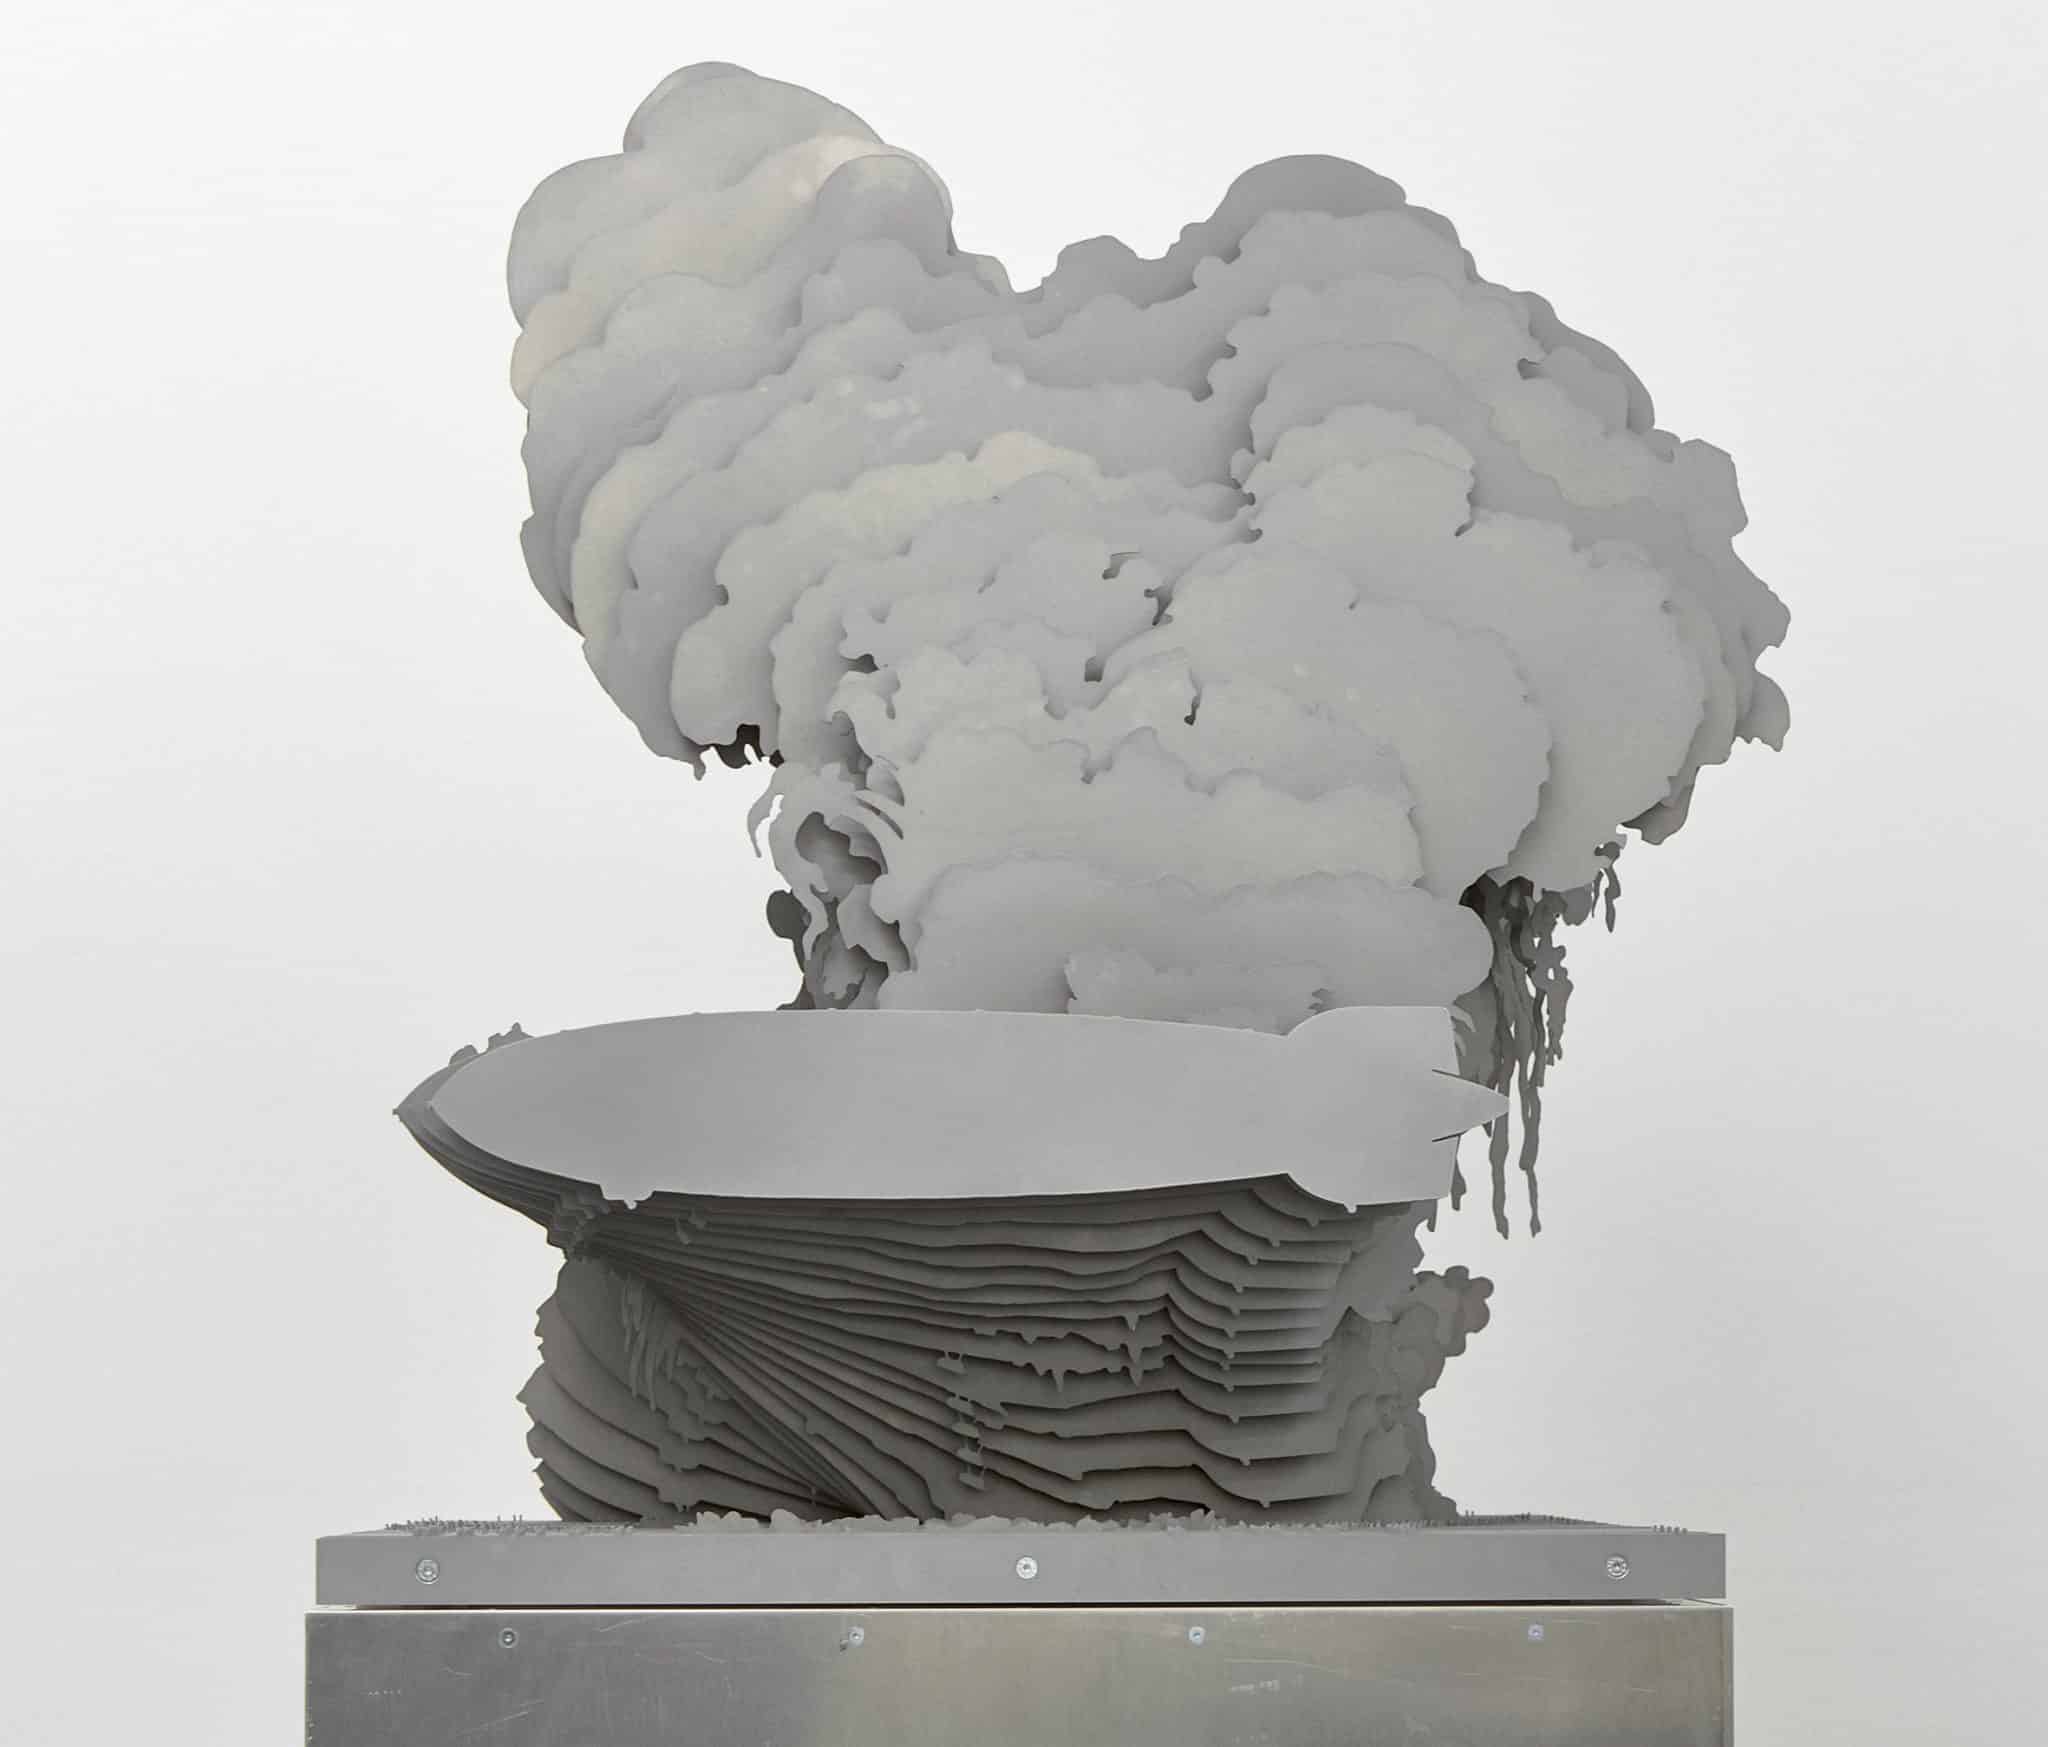 30 SEKUNDEN, kinematographische Skulptur
© VG Bild-Kunst Bonn, Roland Fuhrmann, 2023